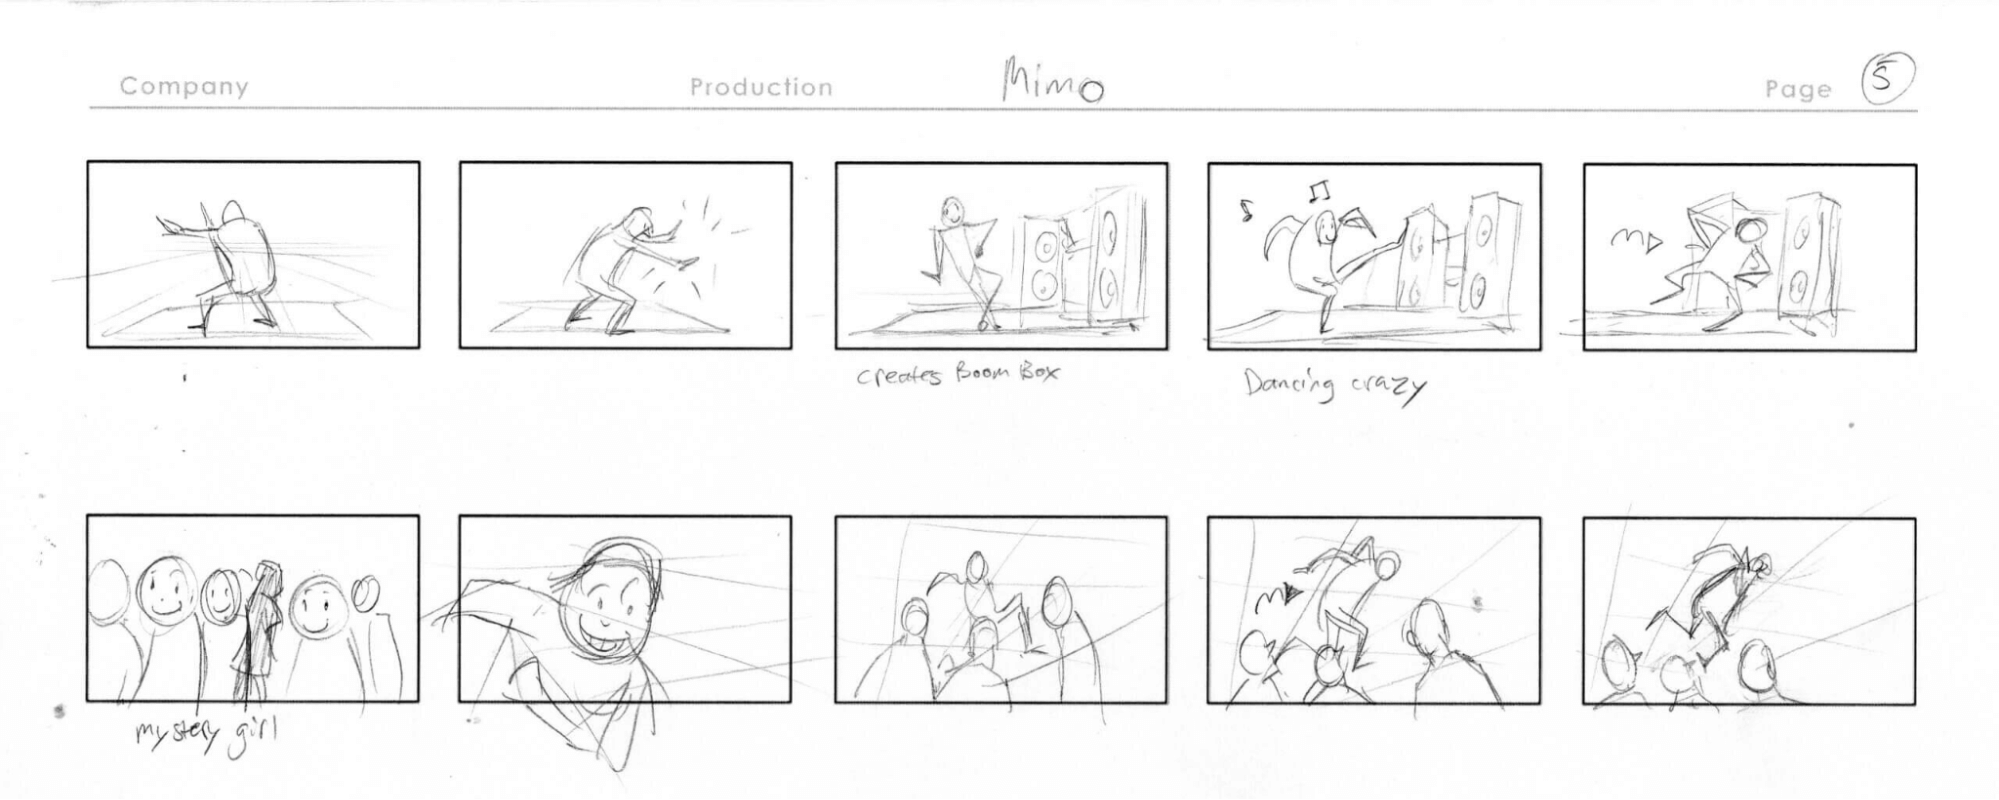 How to make a storyboard Thumbnail Storyboard StudioBinder